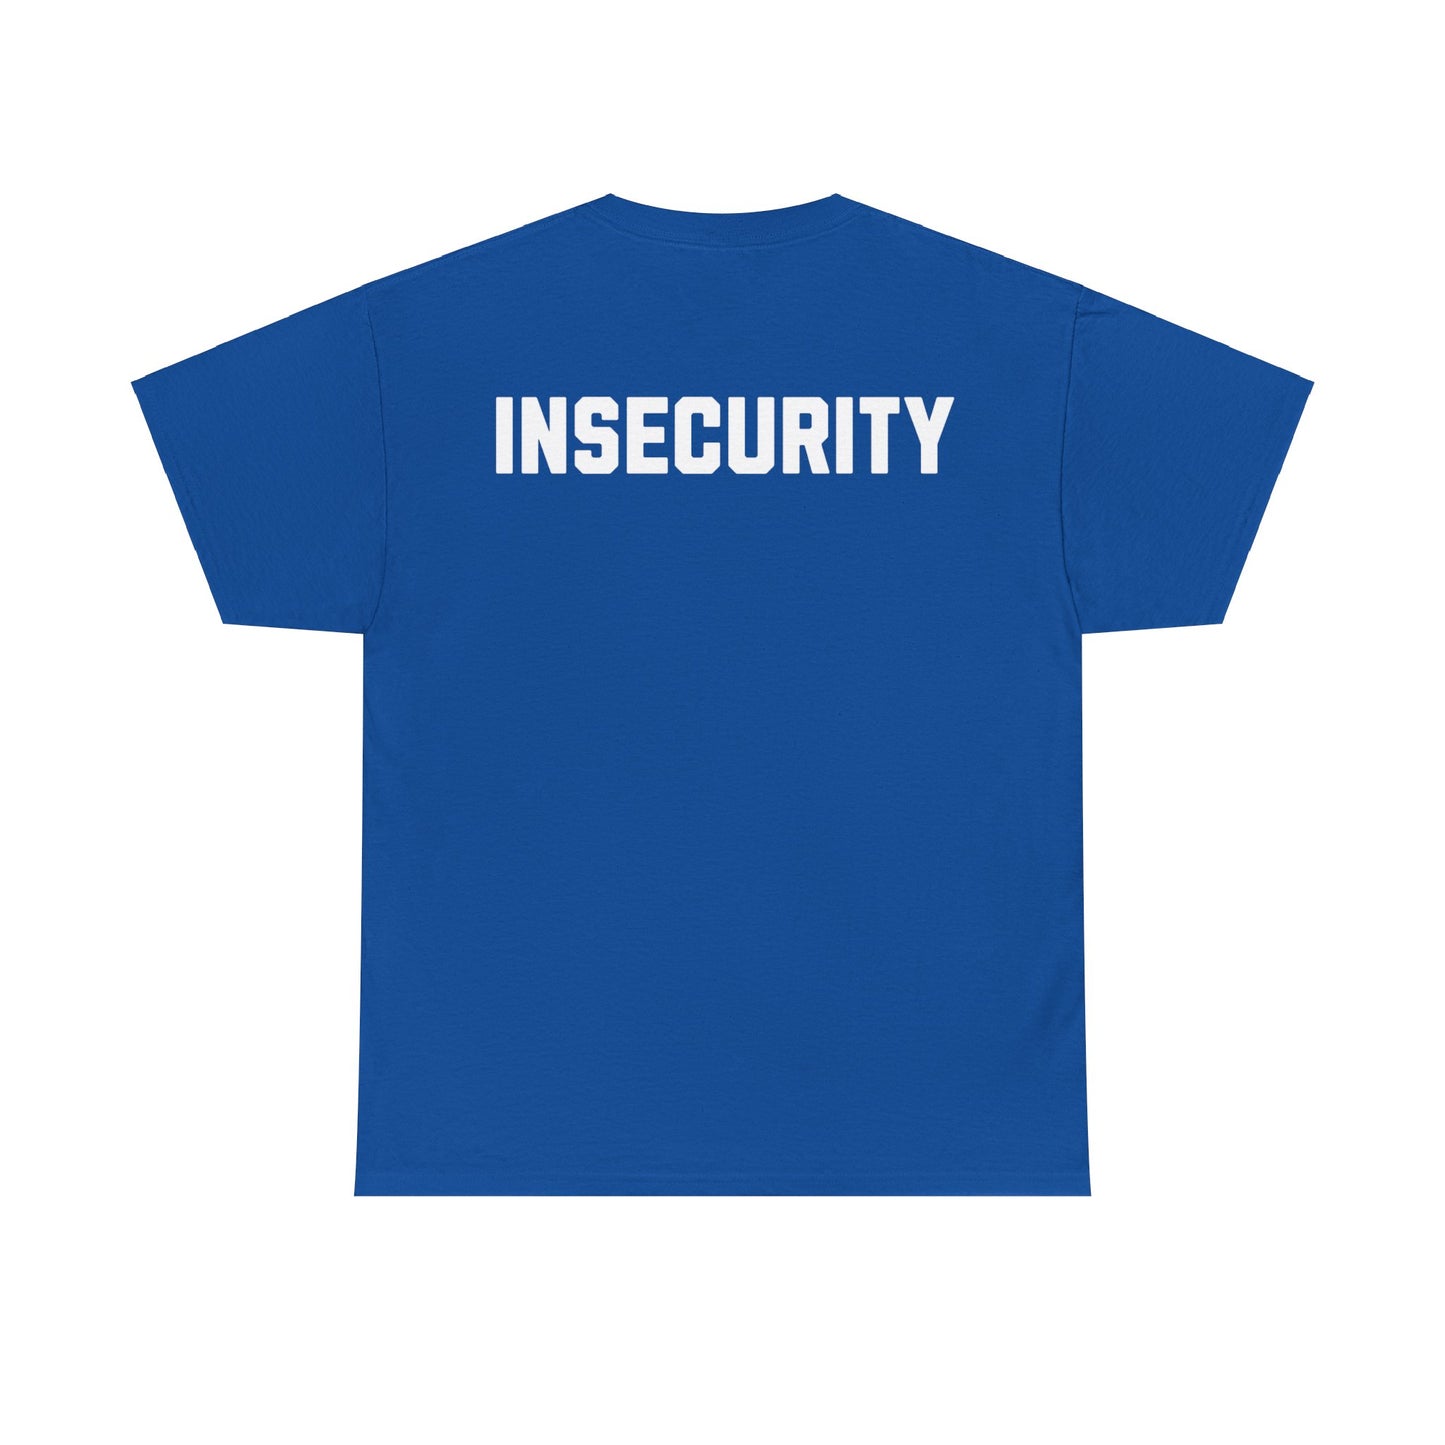 Einzigartiges "Insecurity" T-Shirt - Coole Anspielung auf Security-Shirts. Hochwertiges Baumwoll-Shirt mit witzigem Aufdruck für Nerds, Geeks & Sicherheitsexperten. Perfekt für Conventions, Büro oder Freizeit. Sichern Sie sich jetzt dieses Must-Have für Ihre Streetwear-Kollektion! Insecurity Joke Security Backrpint